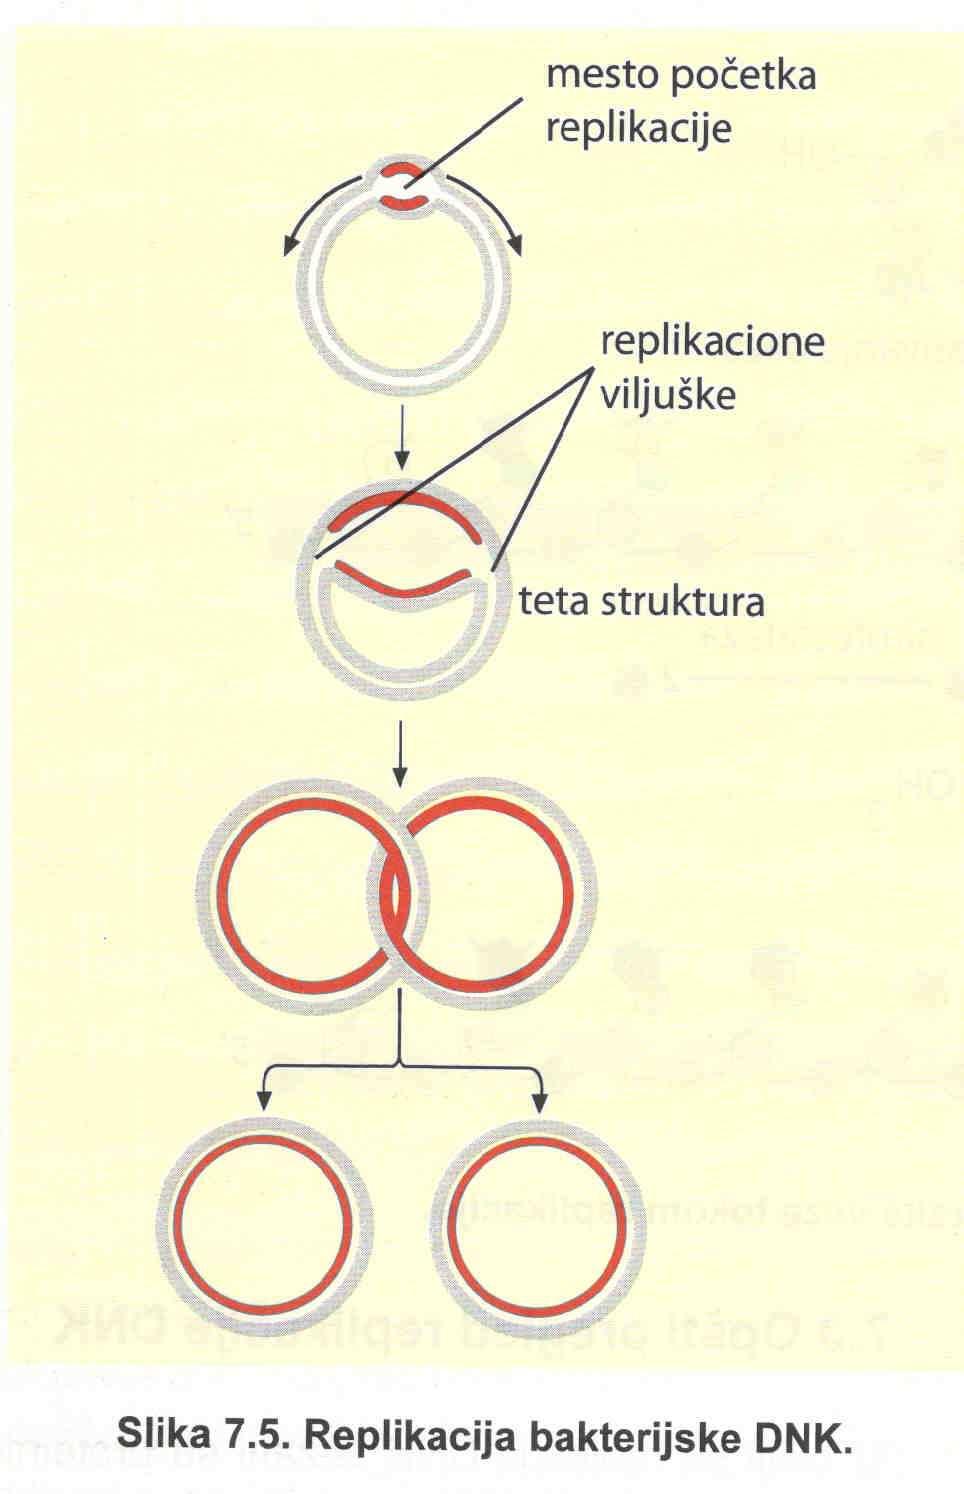 OPŠTI PREGLED REPLIKACIJE DNK molekuli su superspiralizovani Replikacioni početak Replikativna viljuška; dve replikativne viljuške